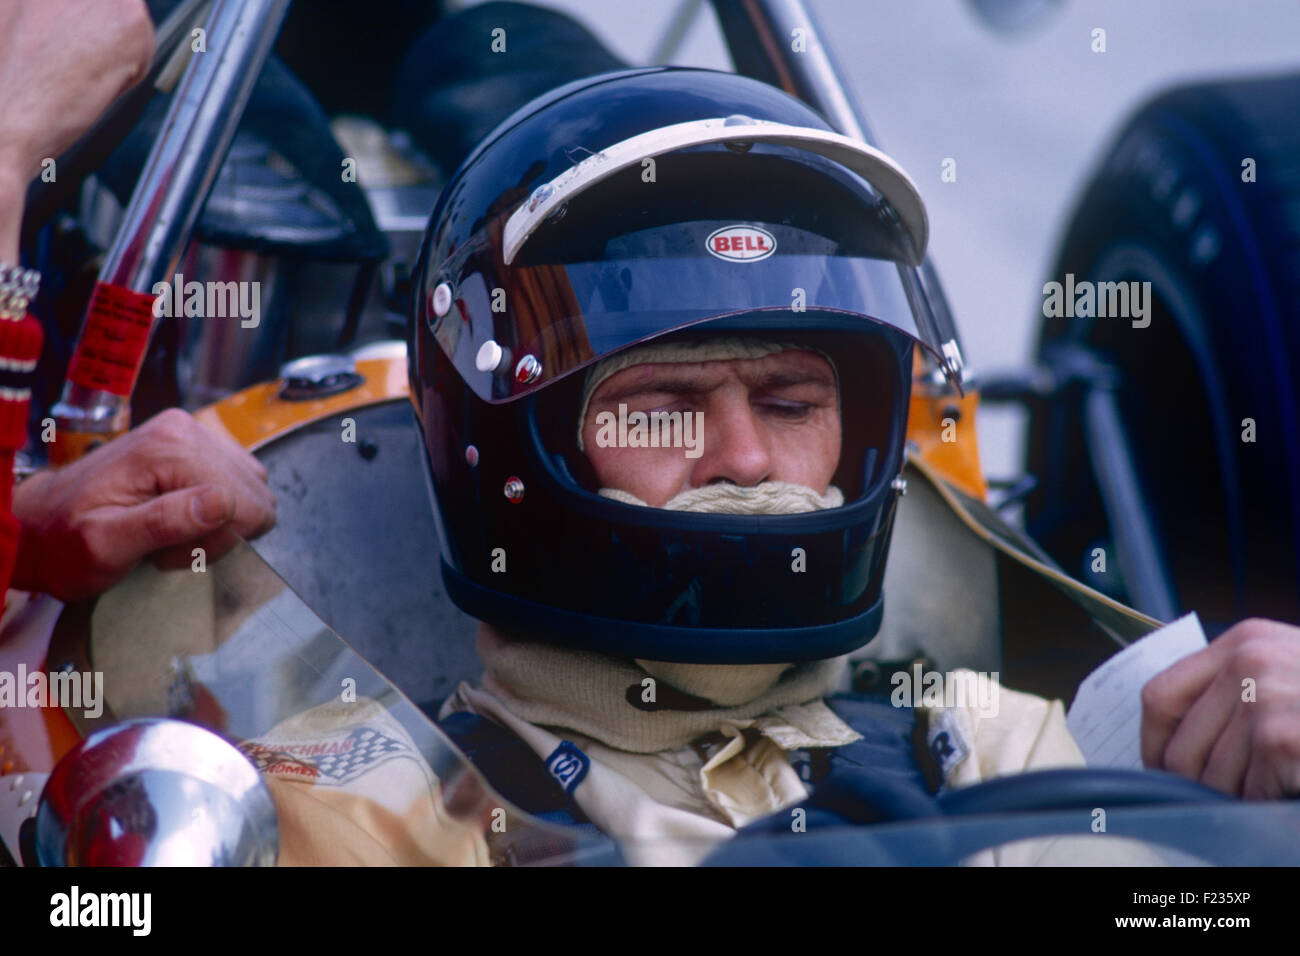 Peter Gethin en su McLaren Formula 1 carreras de coches Foto de stock